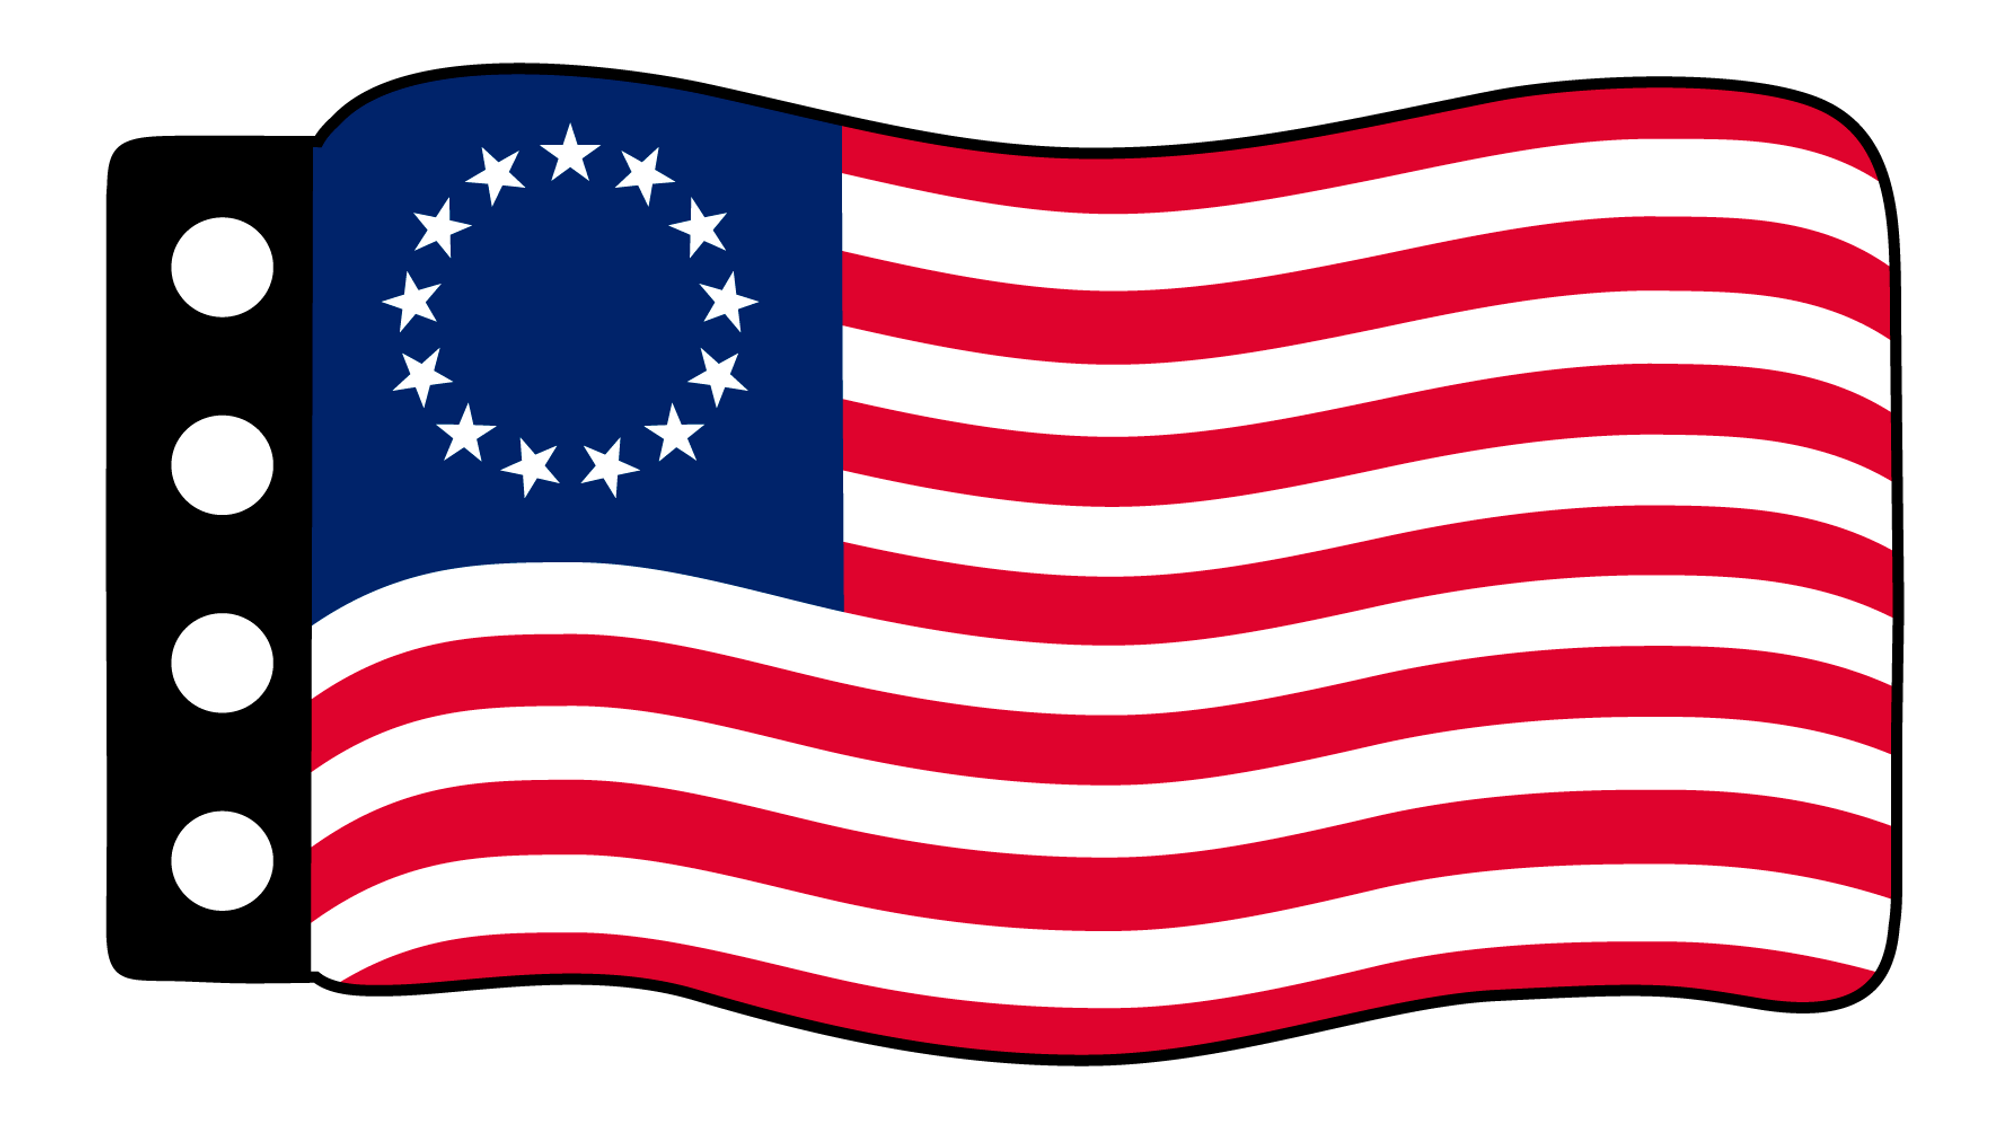 50 Stars Stencil - American Flag Stars Stencil - Create USA Flags